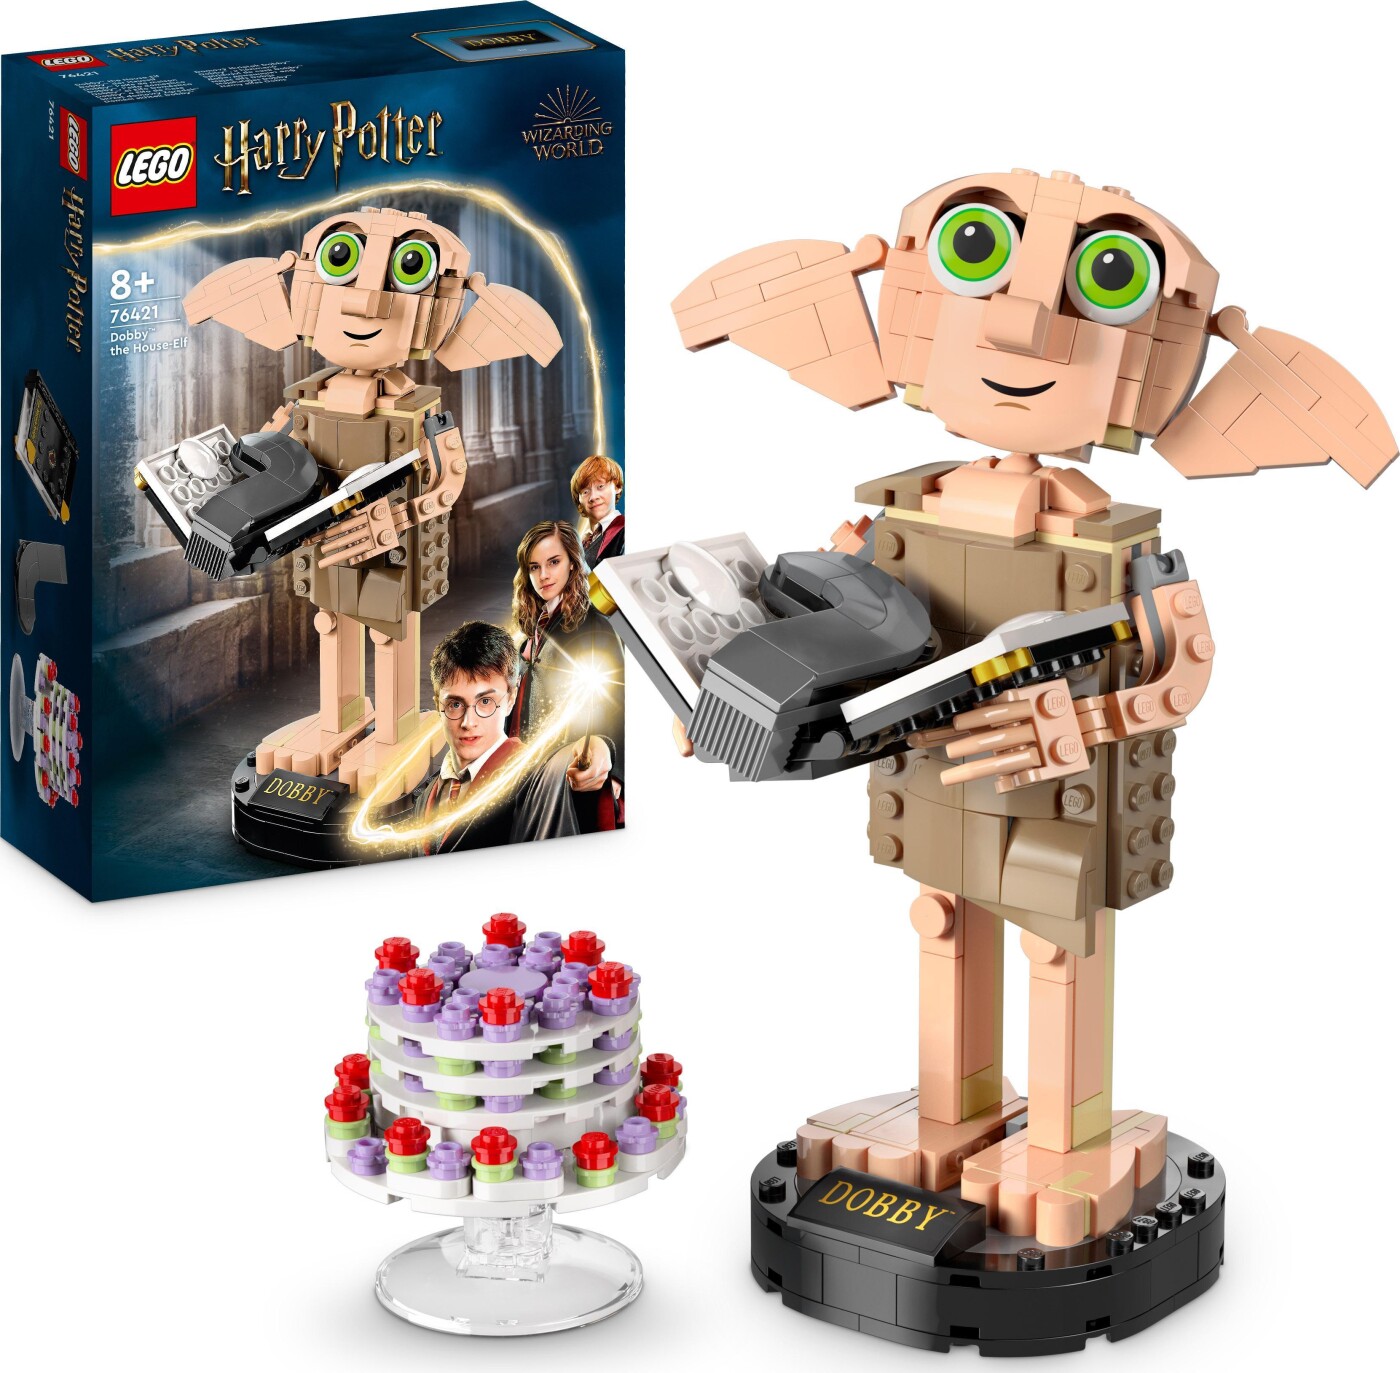 Billede af Lego Harry Potter - Dobby Figur - 76421